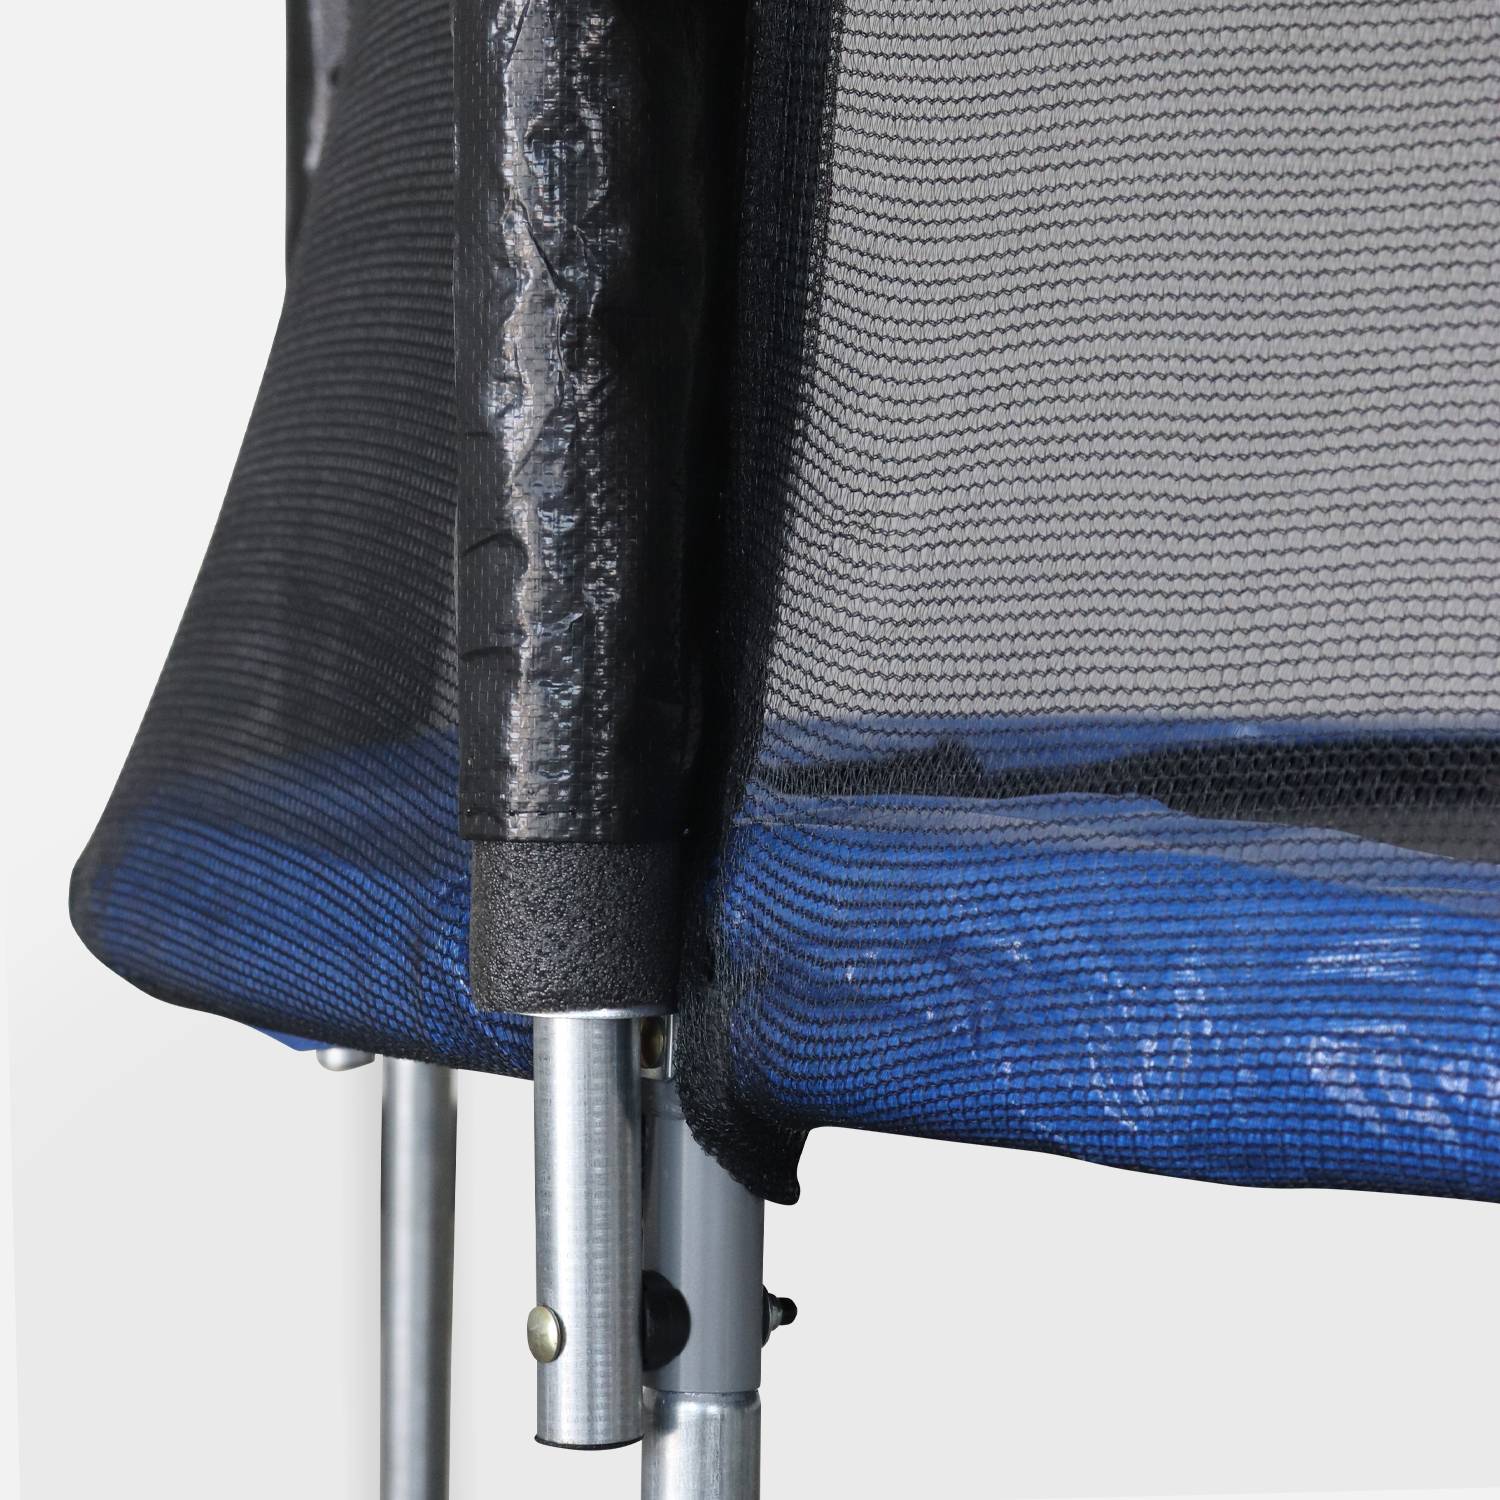 Trampolino 180cm, colore: Blu, con rete di protezione - modello: Cassiopée | Alta Qualità  | Norme UE. Photo3